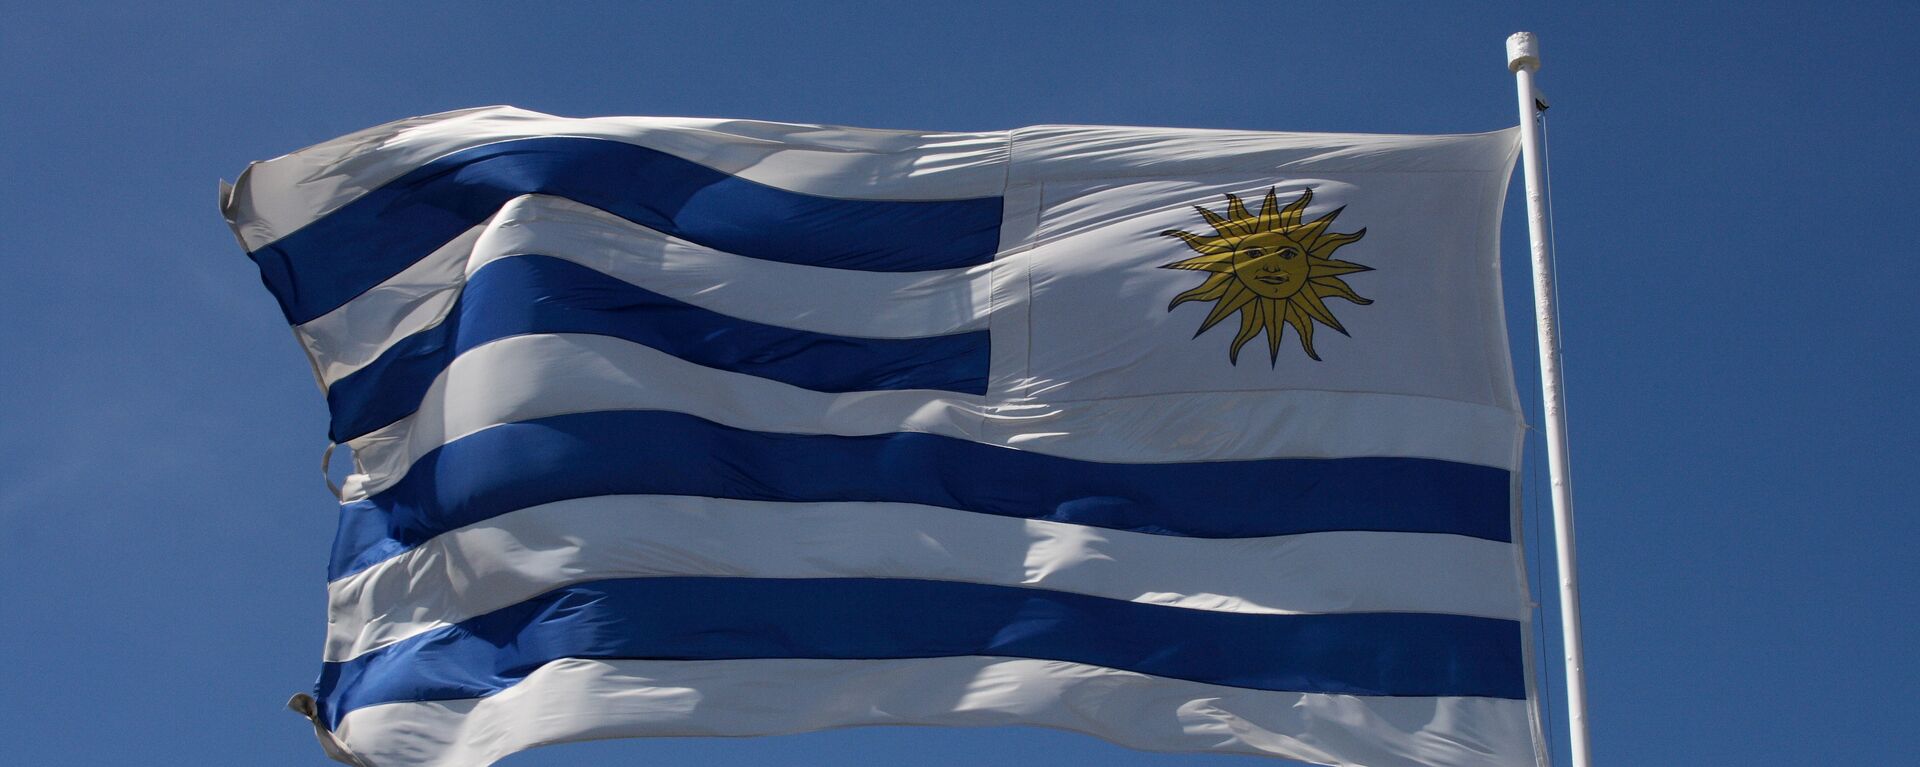 La bandera de Uruguay - Sputnik Mundo, 1920, 02.09.2021